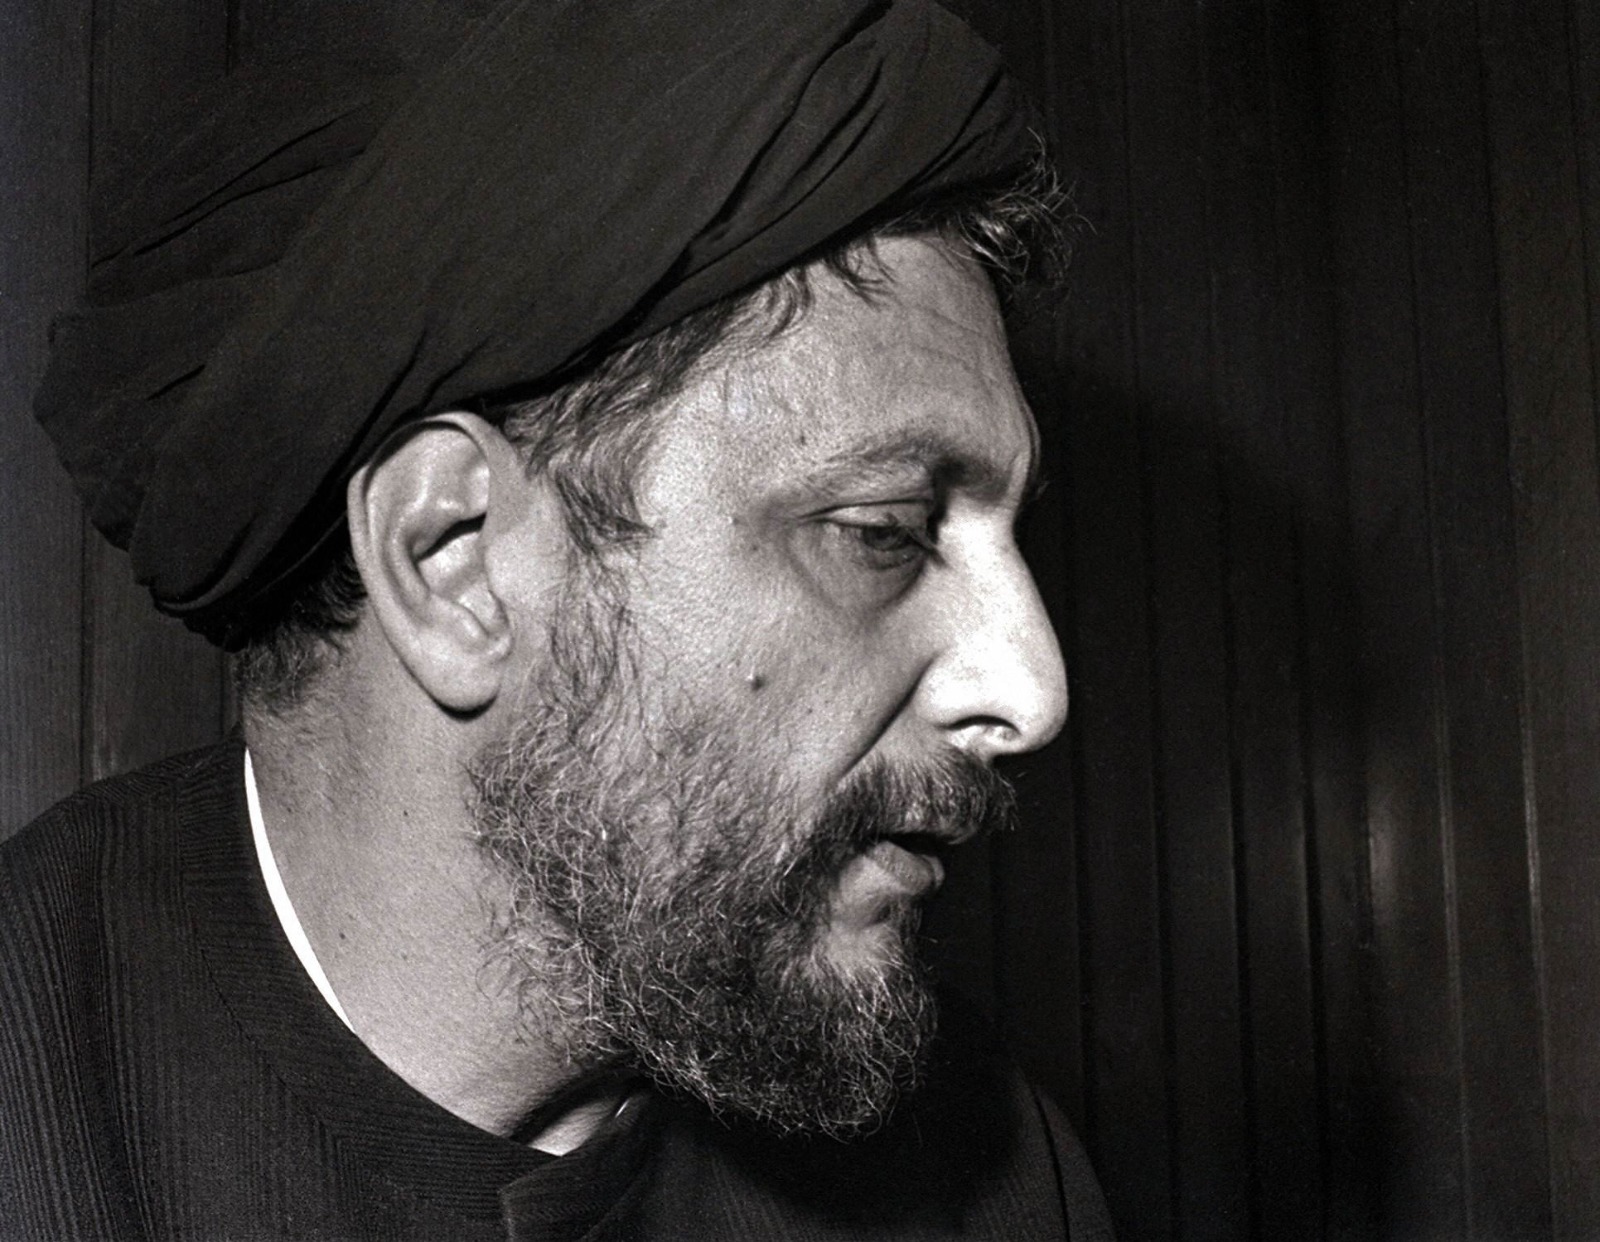 صورة التقطت في بيروت منتصف السبعينيات للزعيم الديني موسى الصدر